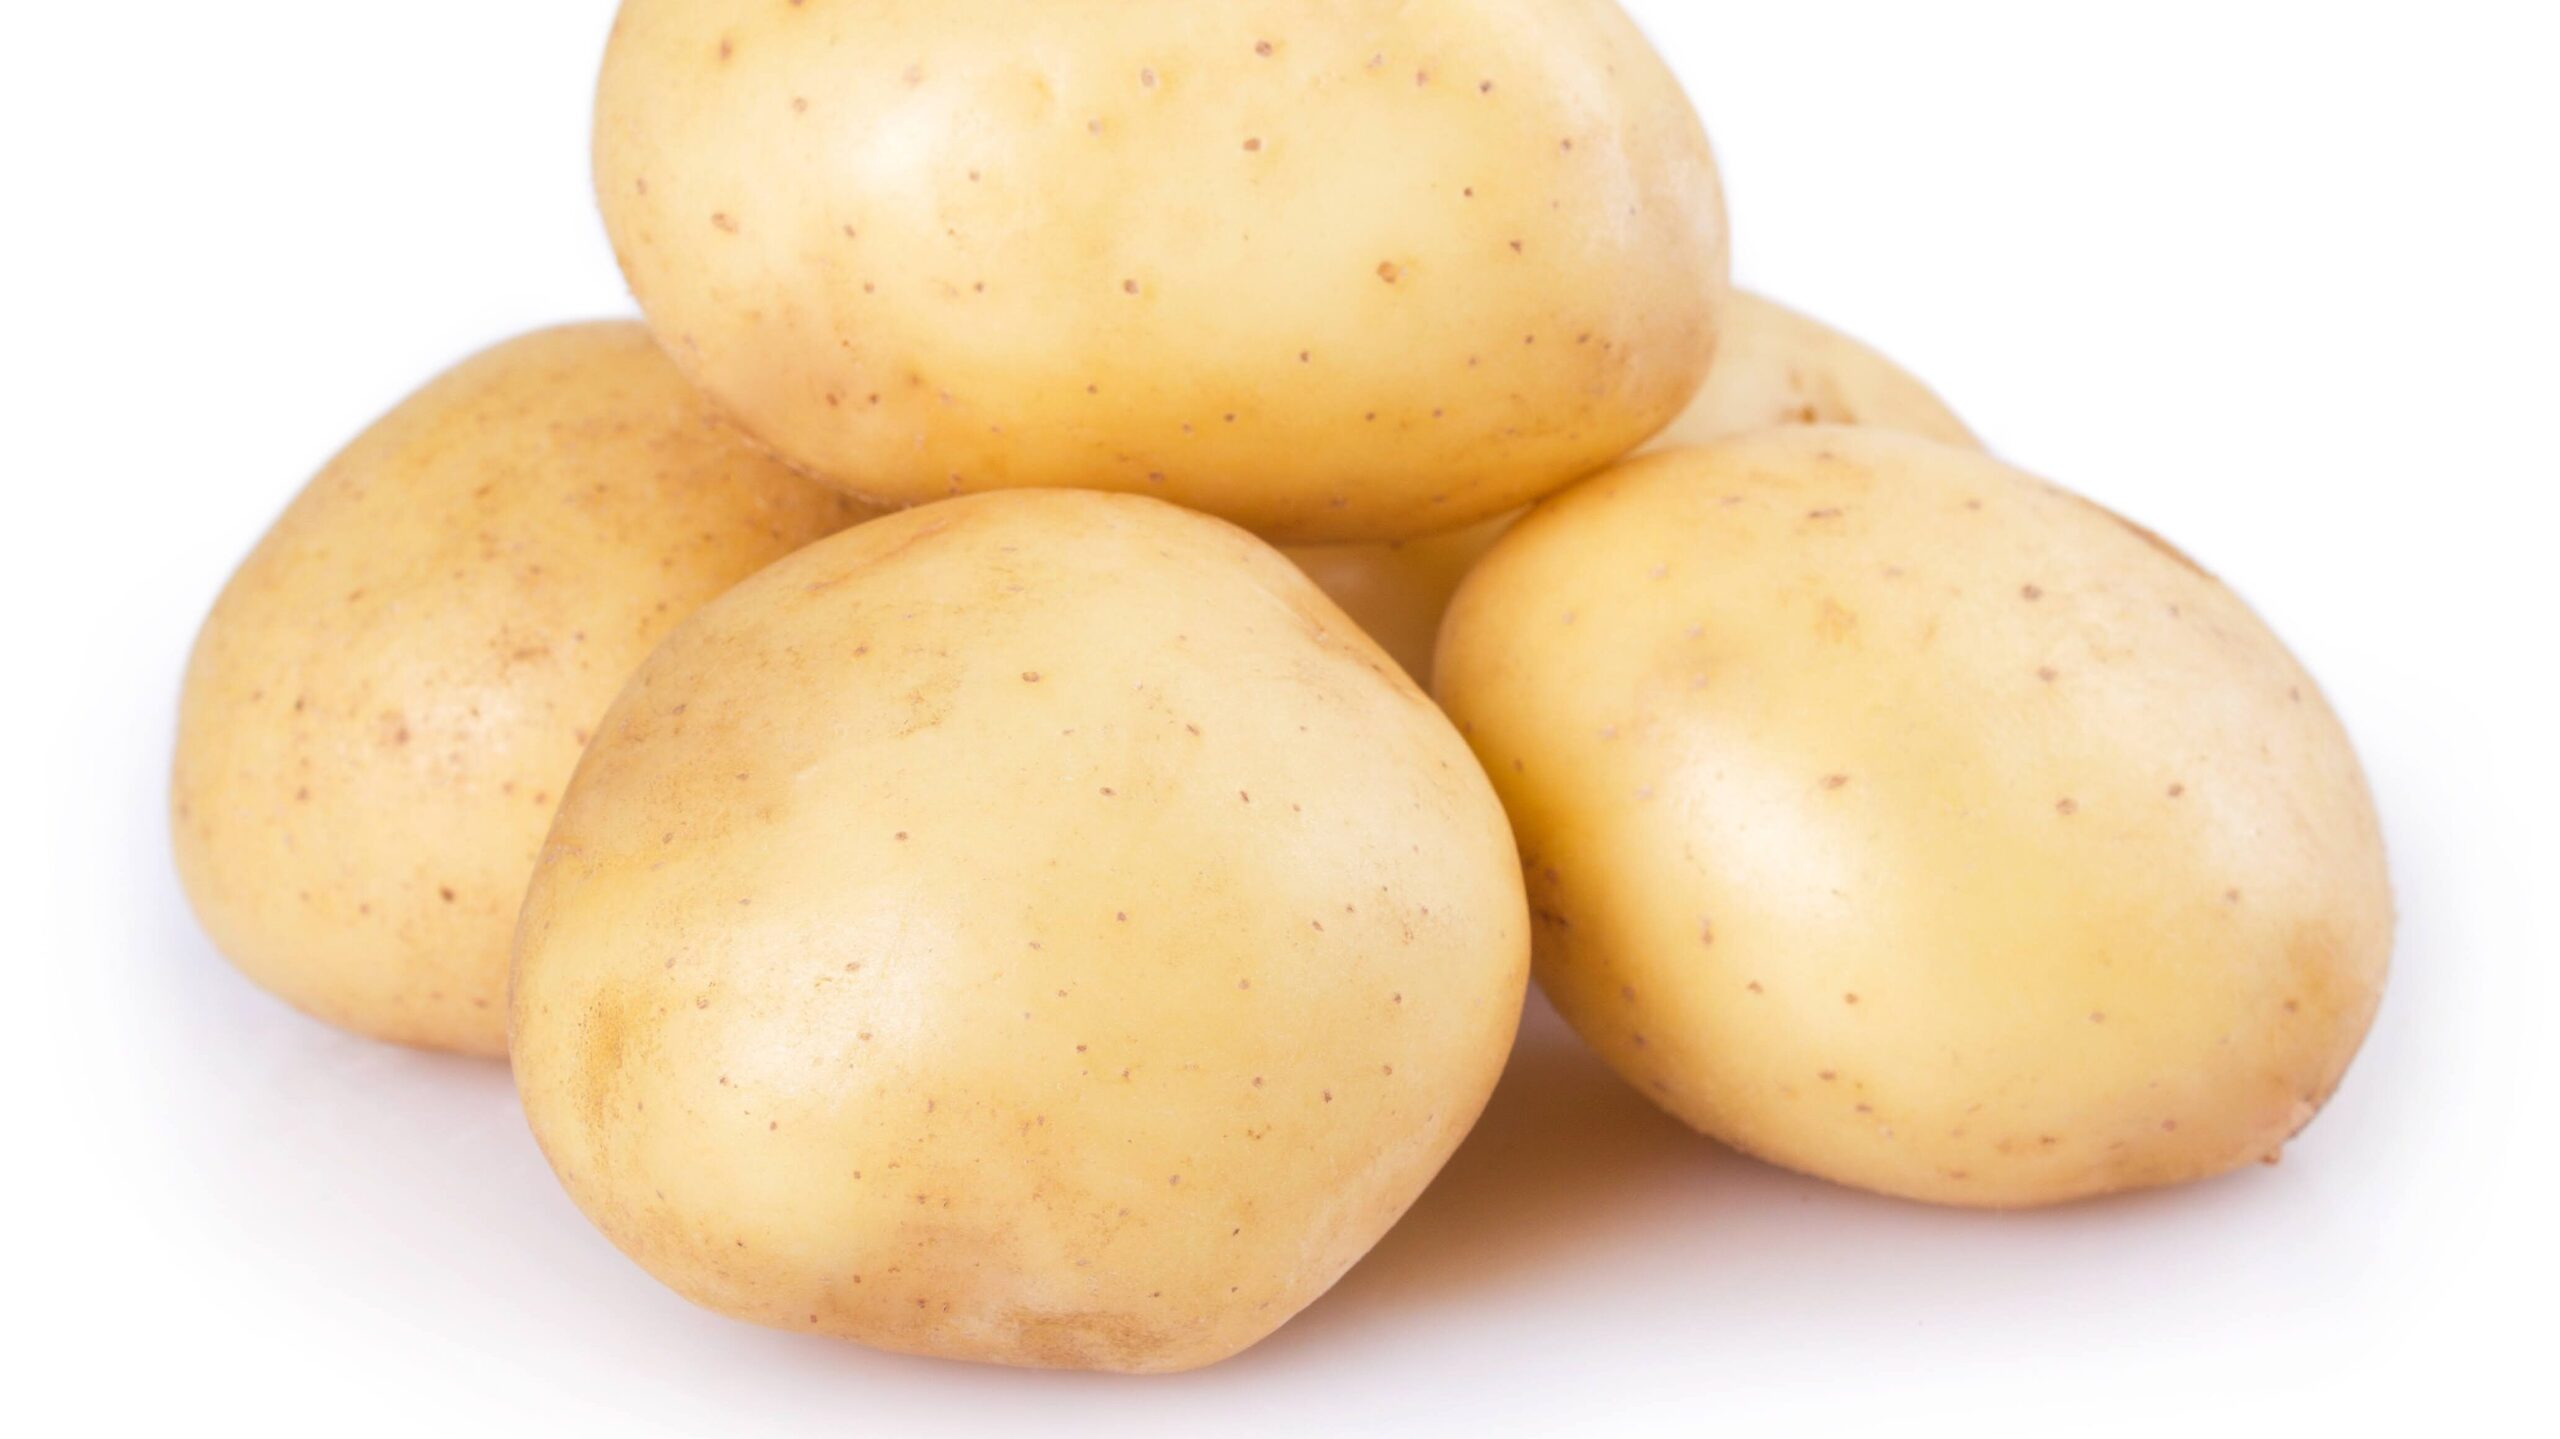 raw potato isolated on white background